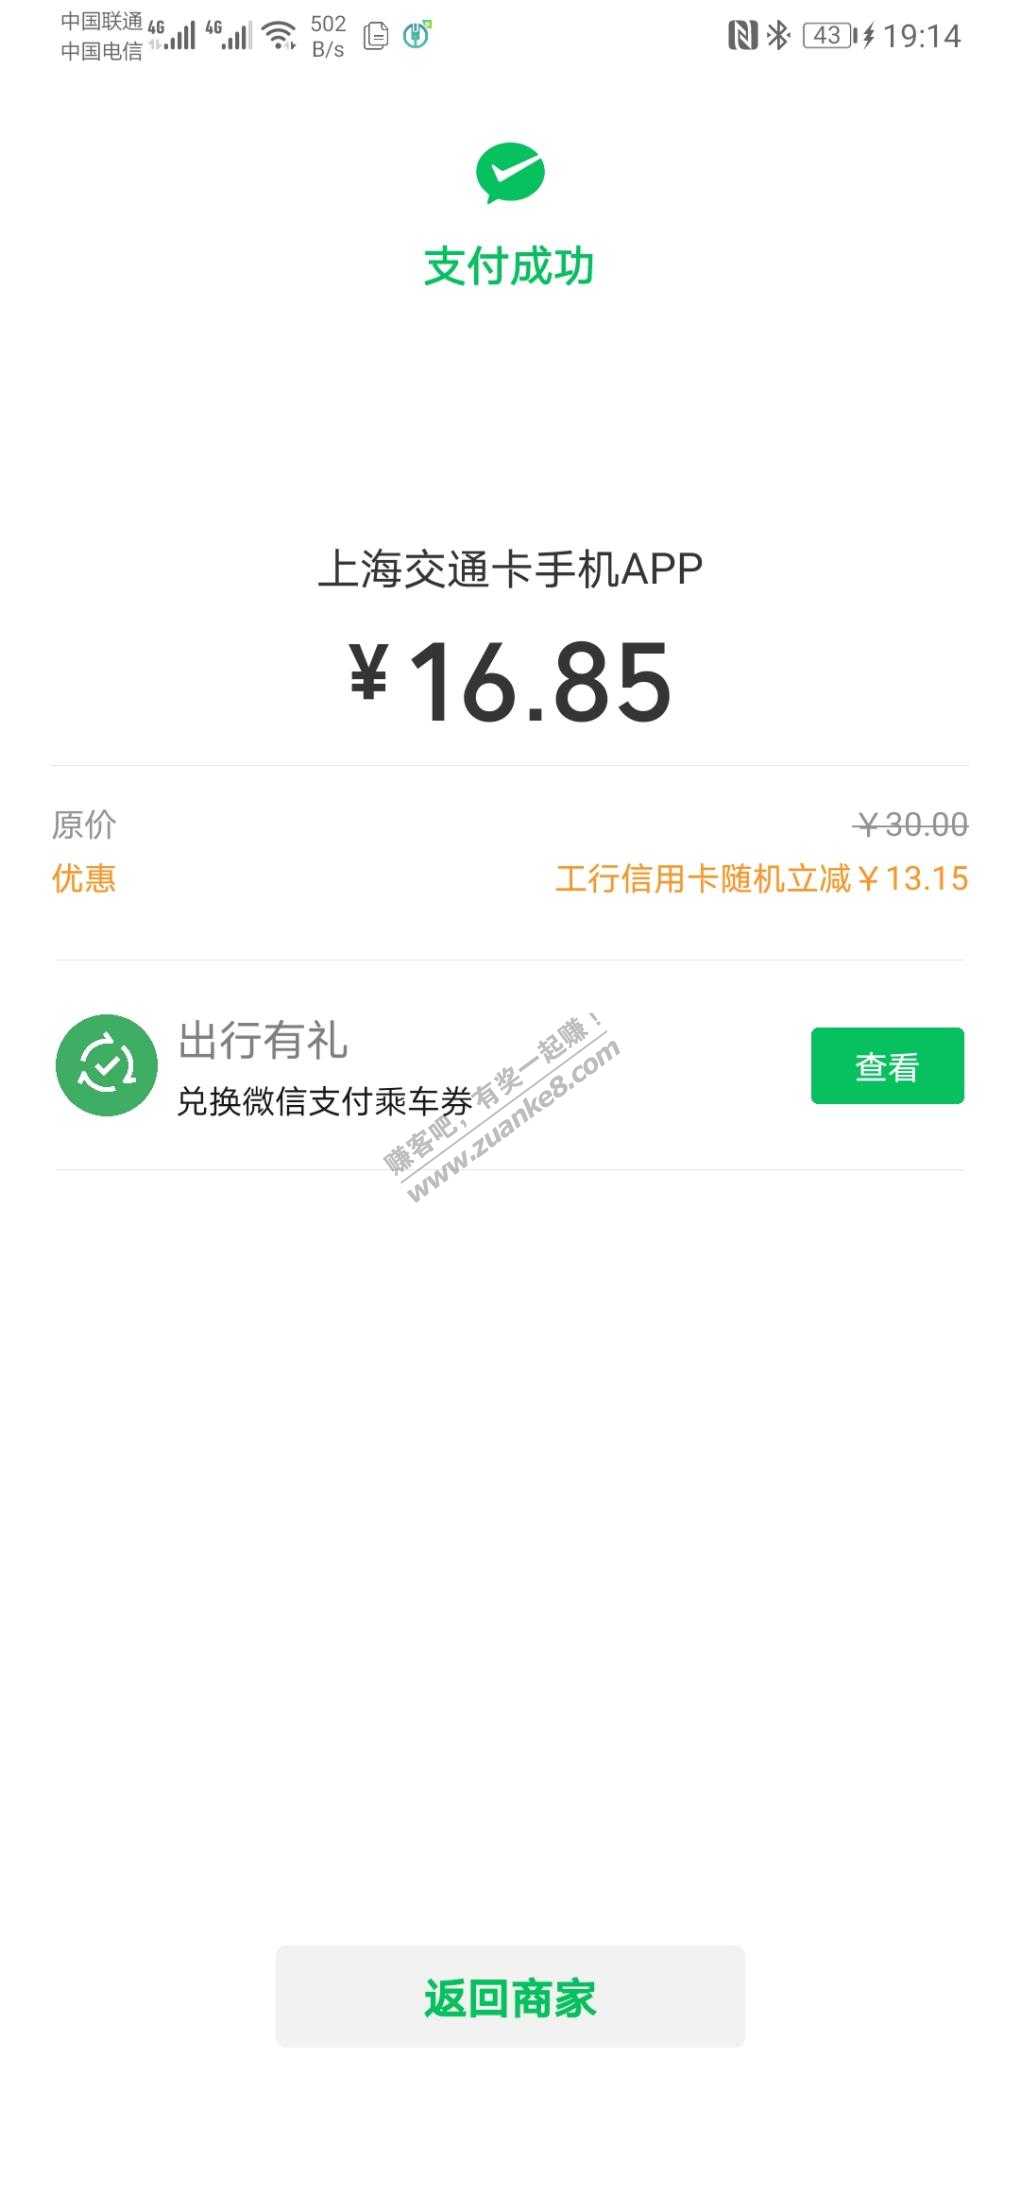 上海交通卡微信工商xyk优惠13-惠小助(52huixz.com)